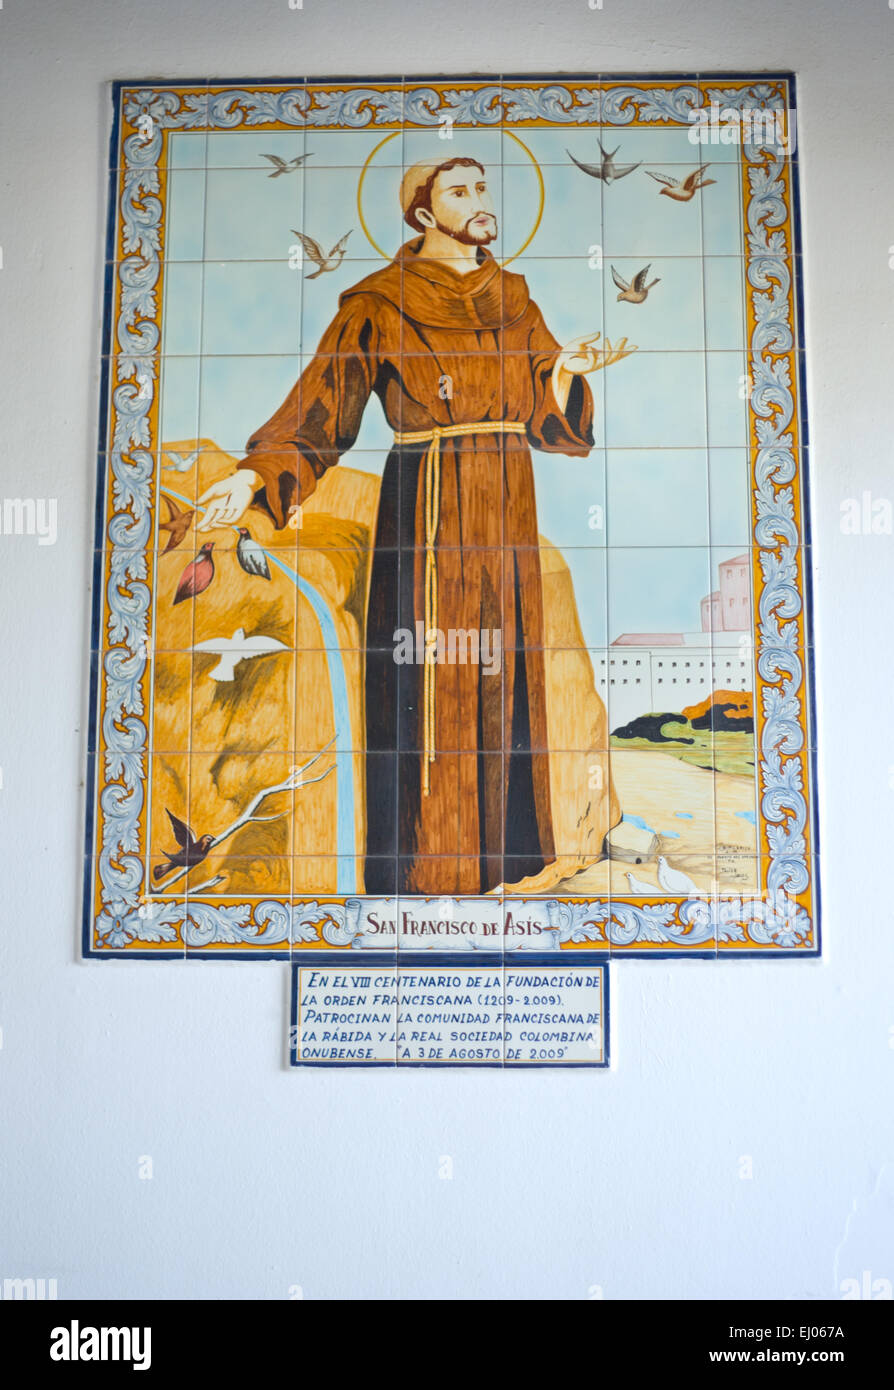 HUELVA, ESPAGNE - jan 27 : Saint François d'Asis carreaux émaillés photo à l'intérieur de La Rabida Monastère, Huelva, Espagne le 27 janvier 2015 Banque D'Images